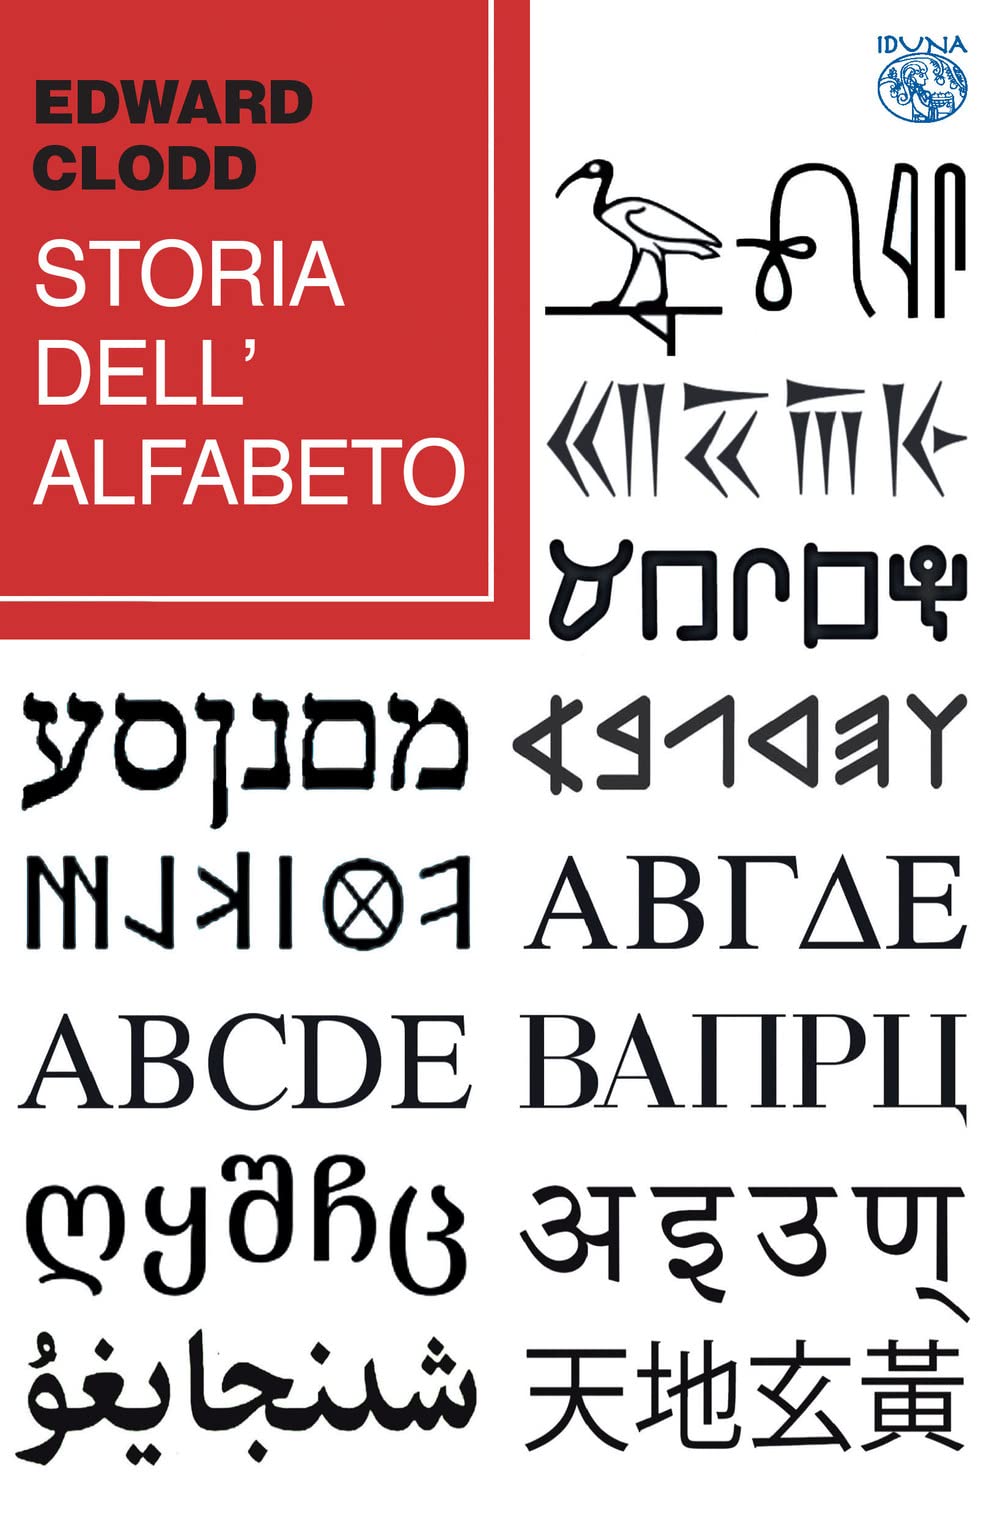 Libri Edward Clodd - Storia Dell'alfabeto NUOVO SIGILLATO, EDIZIONE DEL 23/11/2022 SUBITO DISPONIBILE